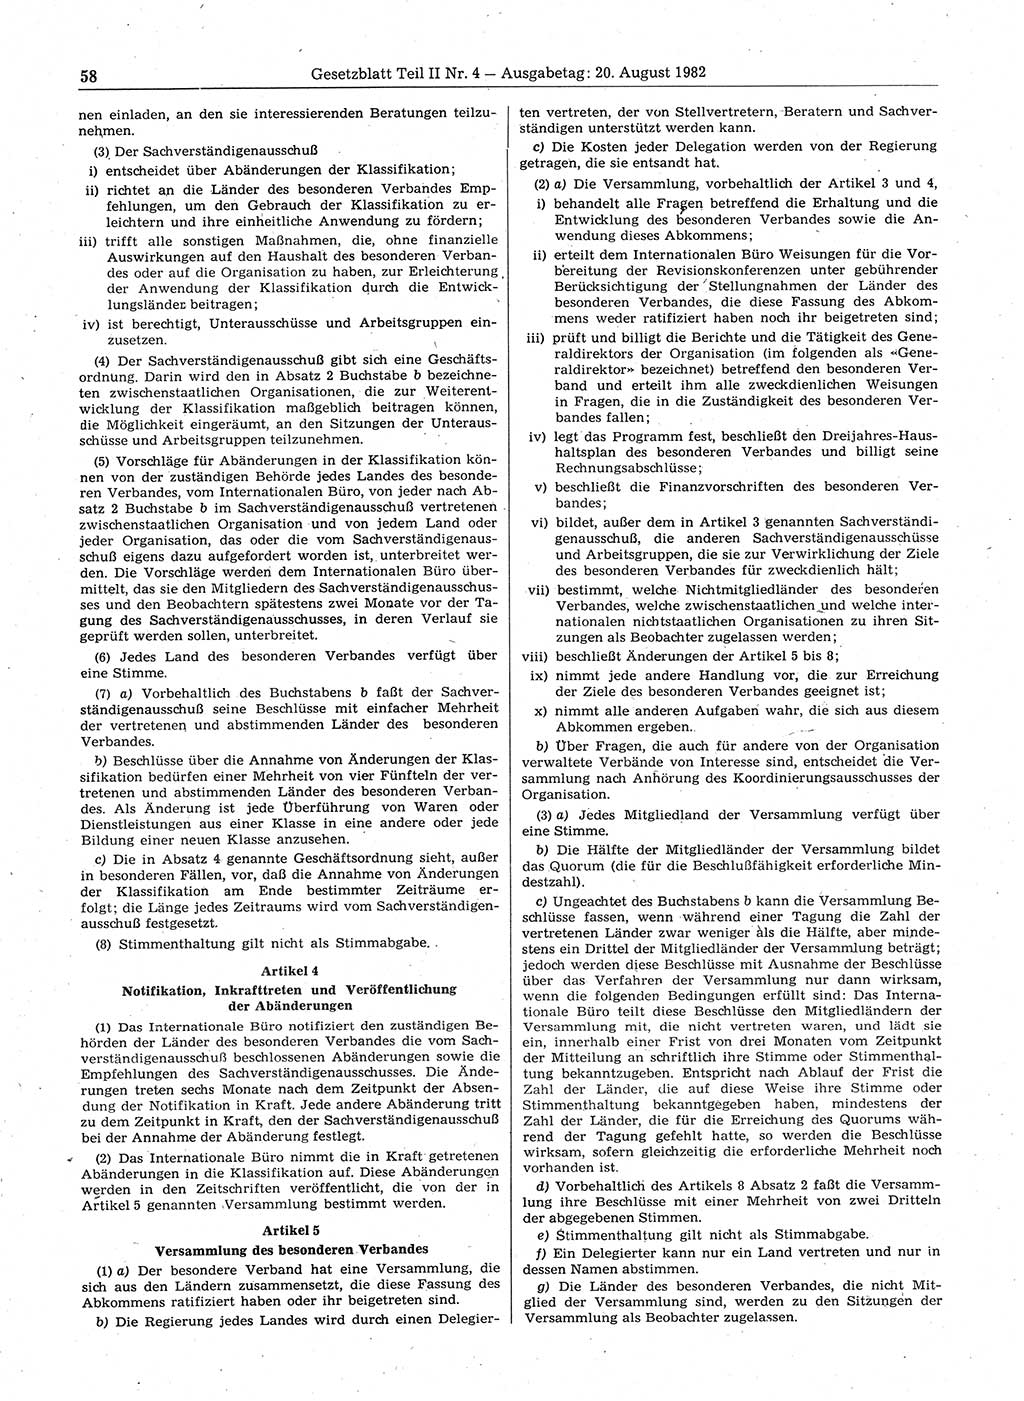 Gesetzblatt (GBl.) der Deutschen Demokratischen Republik (DDR) Teil ⅠⅠ 1982, Seite 58 (GBl. DDR ⅠⅠ 1982, S. 58)